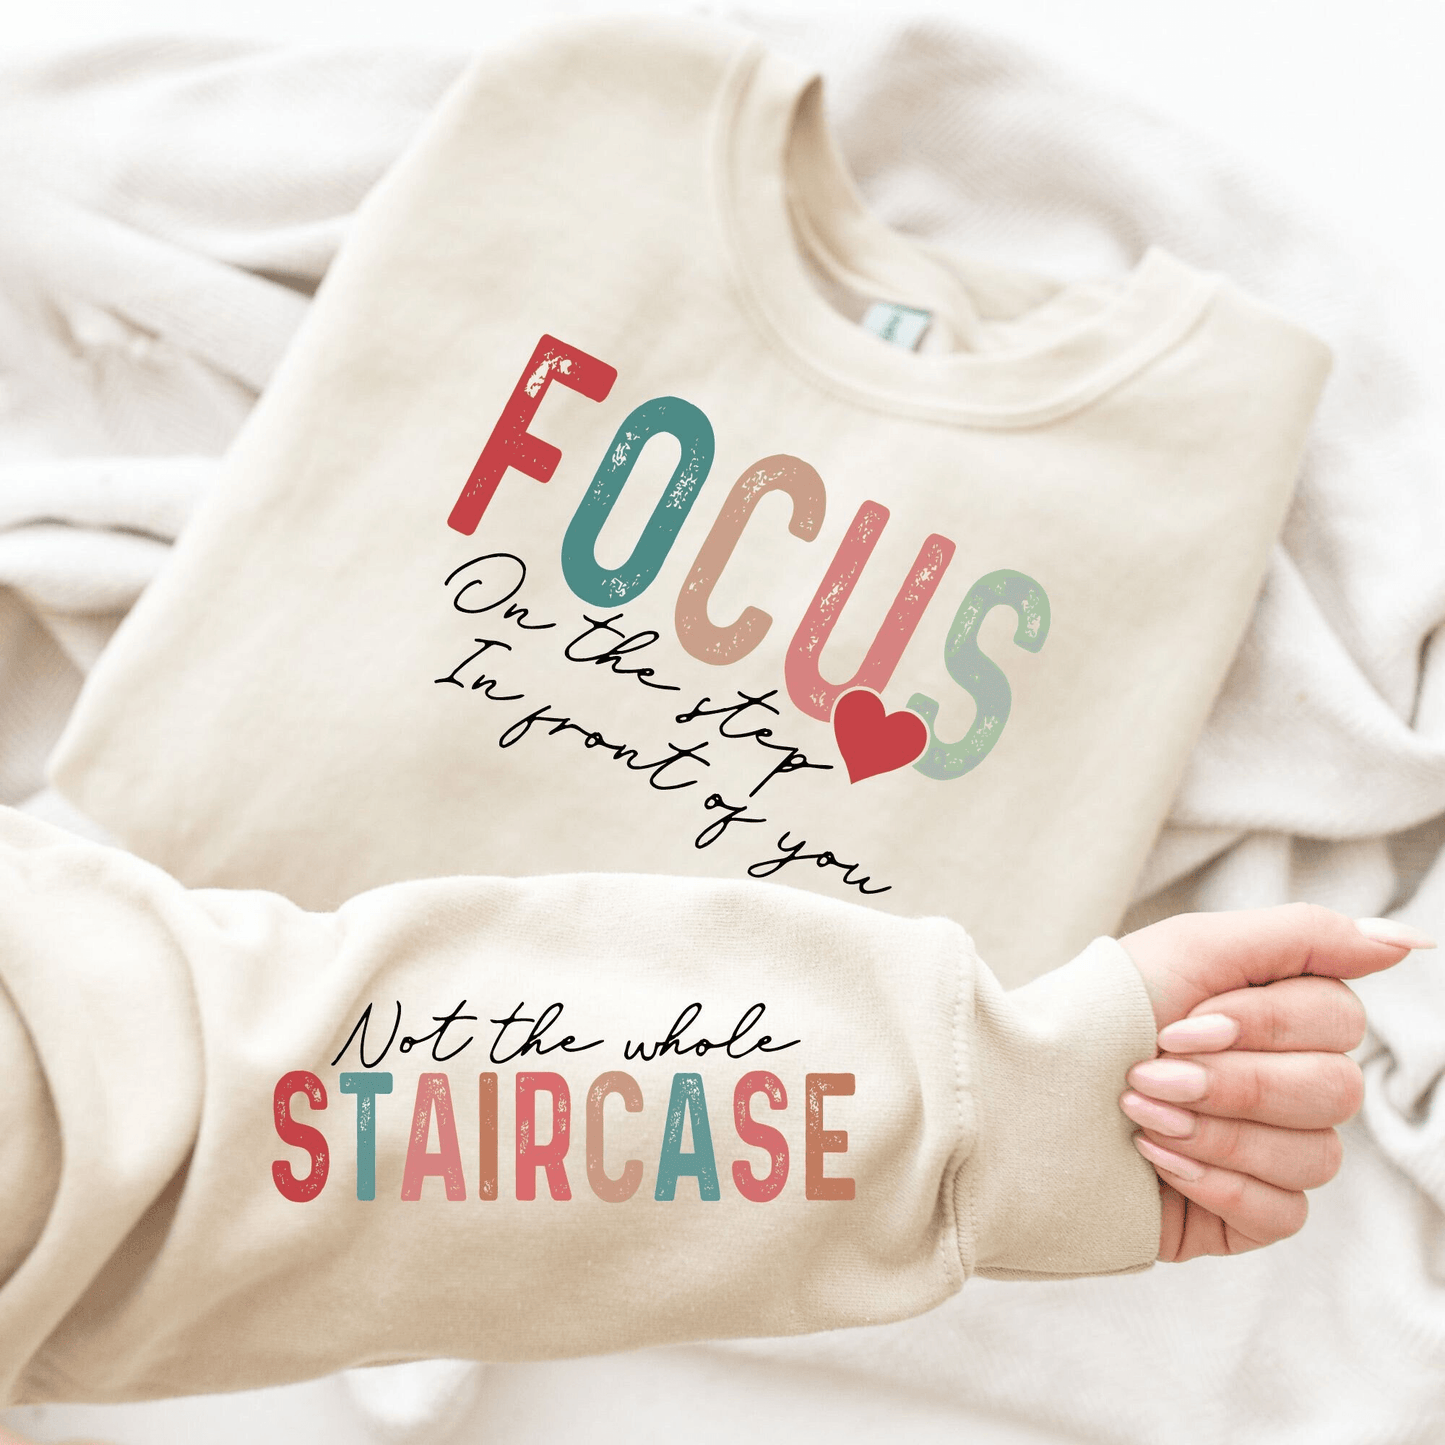 Fokus Schritt Sweatshirt - Inspiration im Alltag - GiftHaus